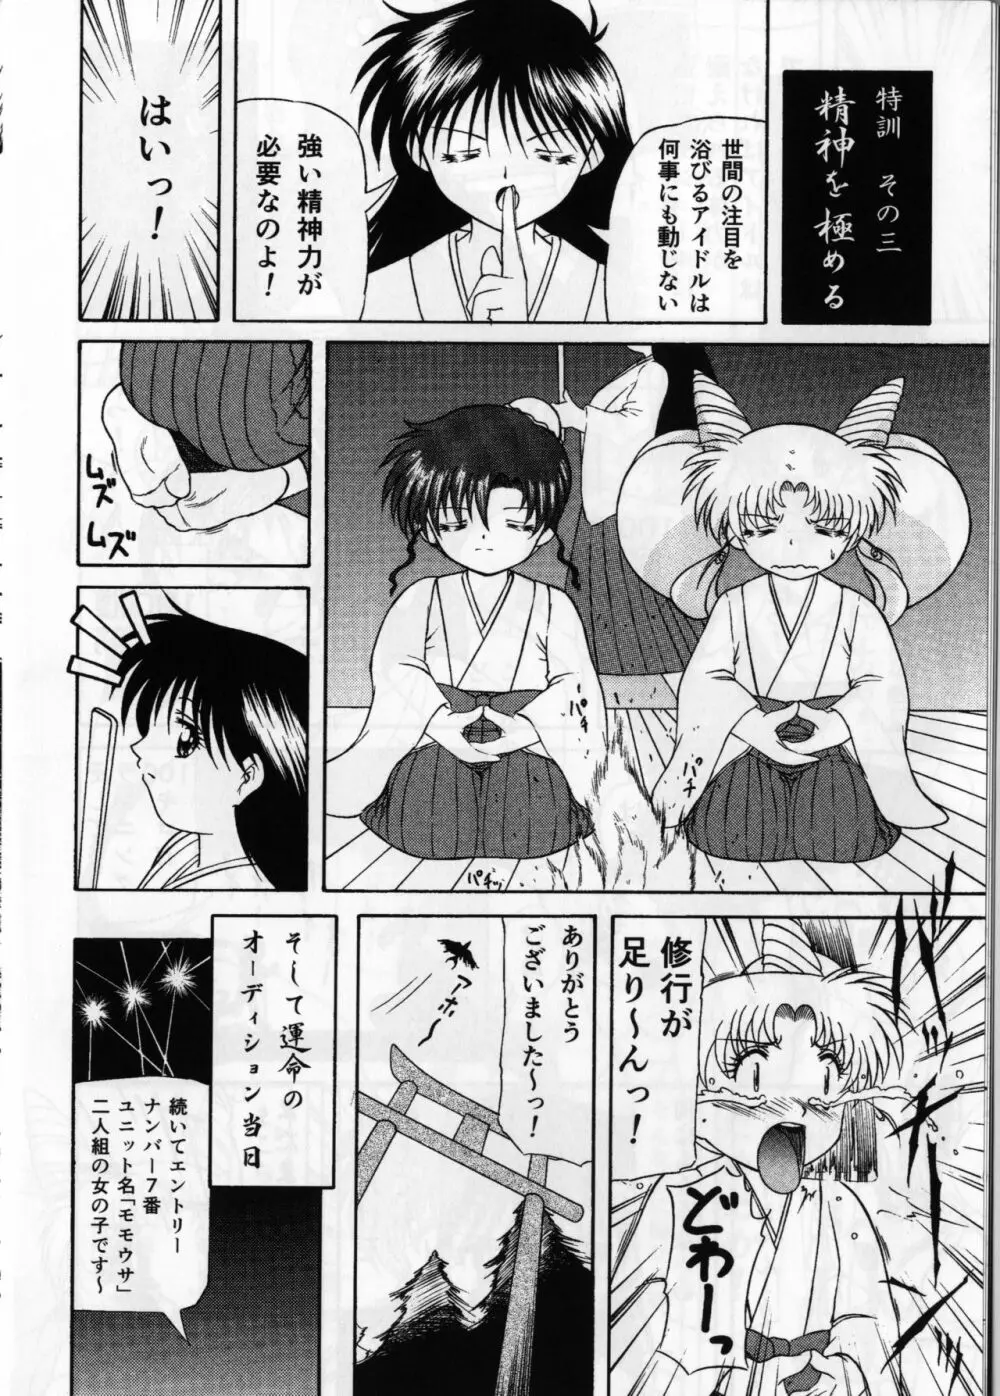 ぴんく・しゅがぁ 20th Anniversary Special 10ページ